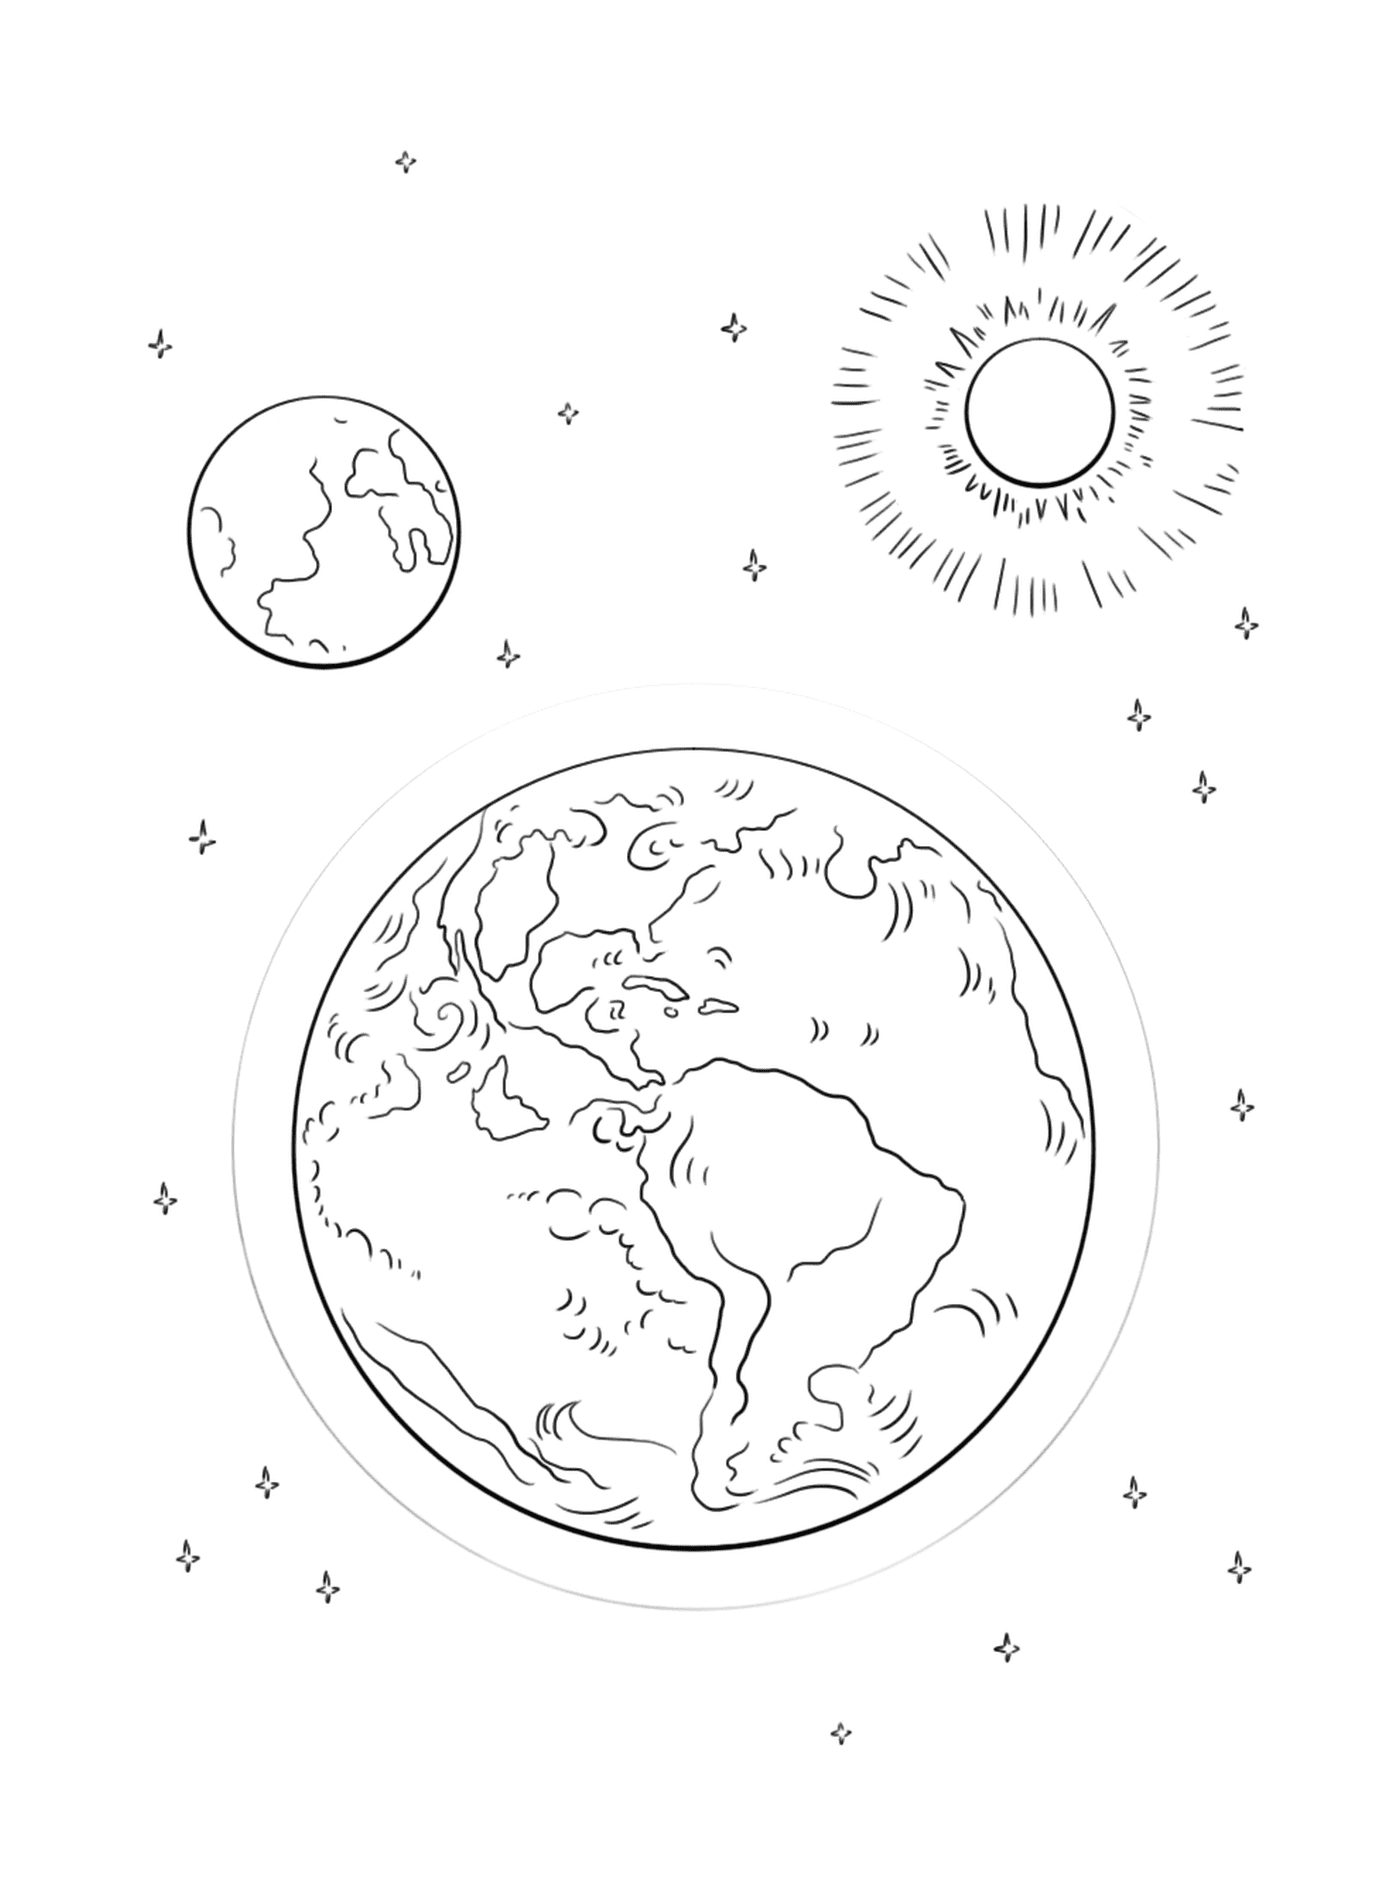  Terra e Sol no Espaço 